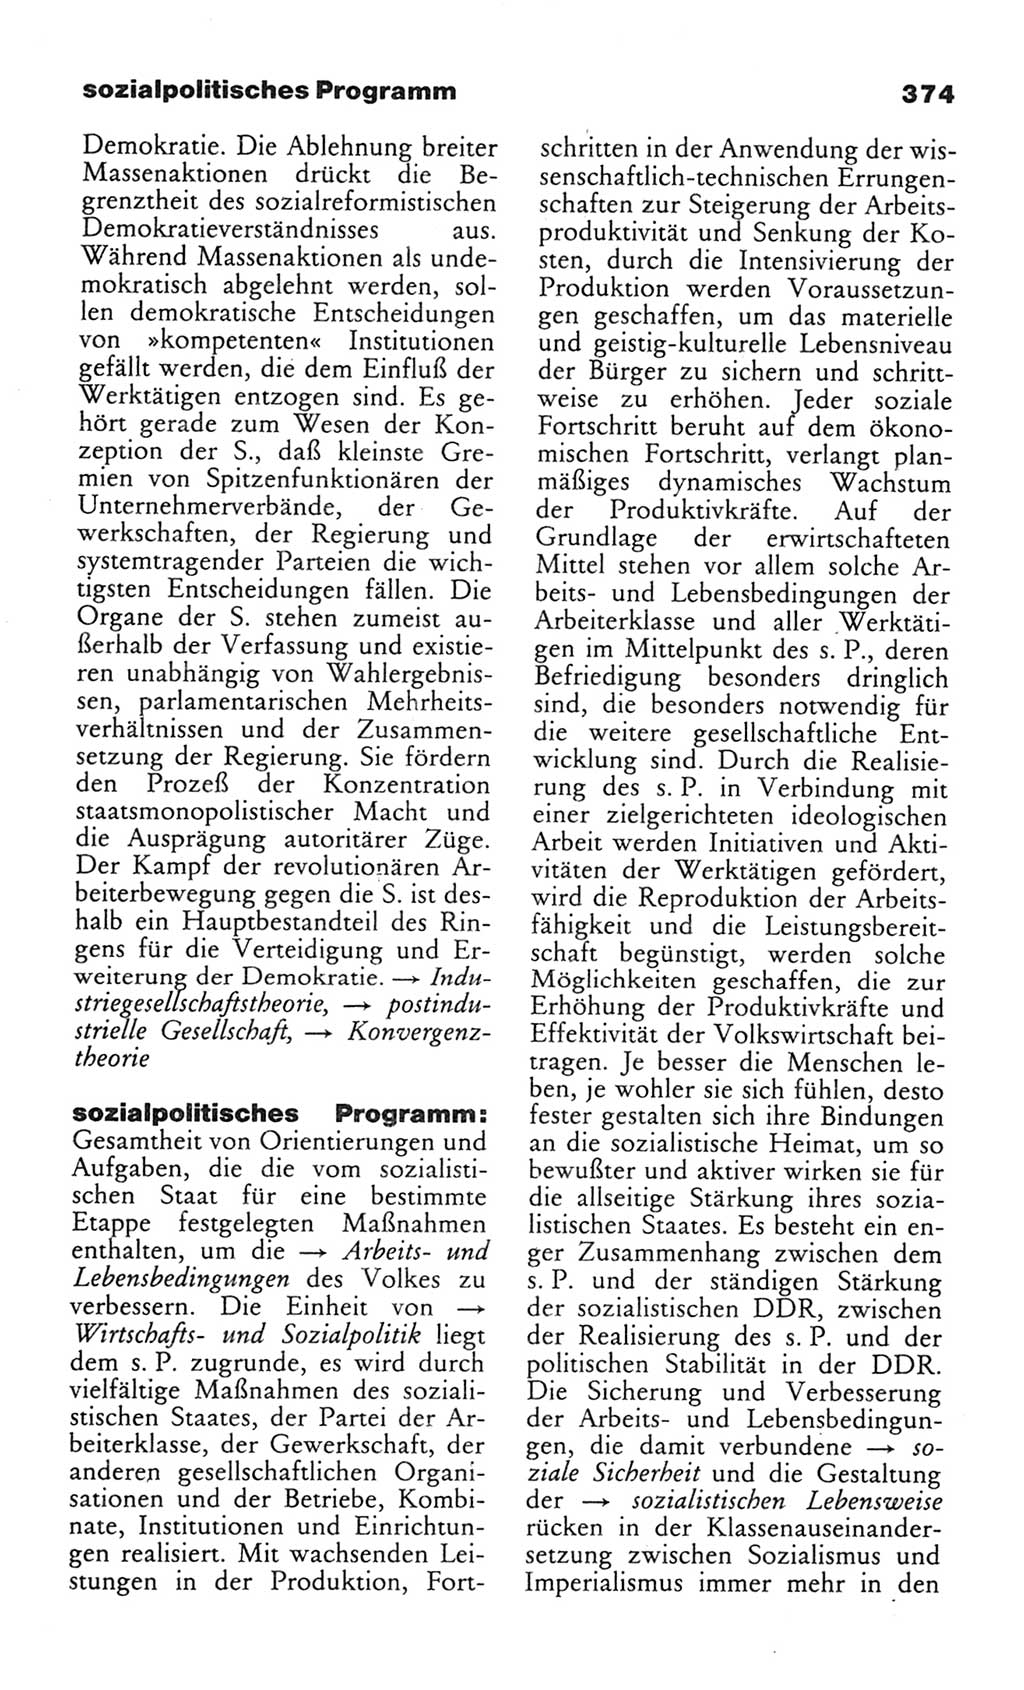 Wörterbuch des wissenschaftlichen Kommunismus [Deutsche Demokratische Republik (DDR)] 1982, Seite 374 (Wb. wiss. Komm. DDR 1982, S. 374)